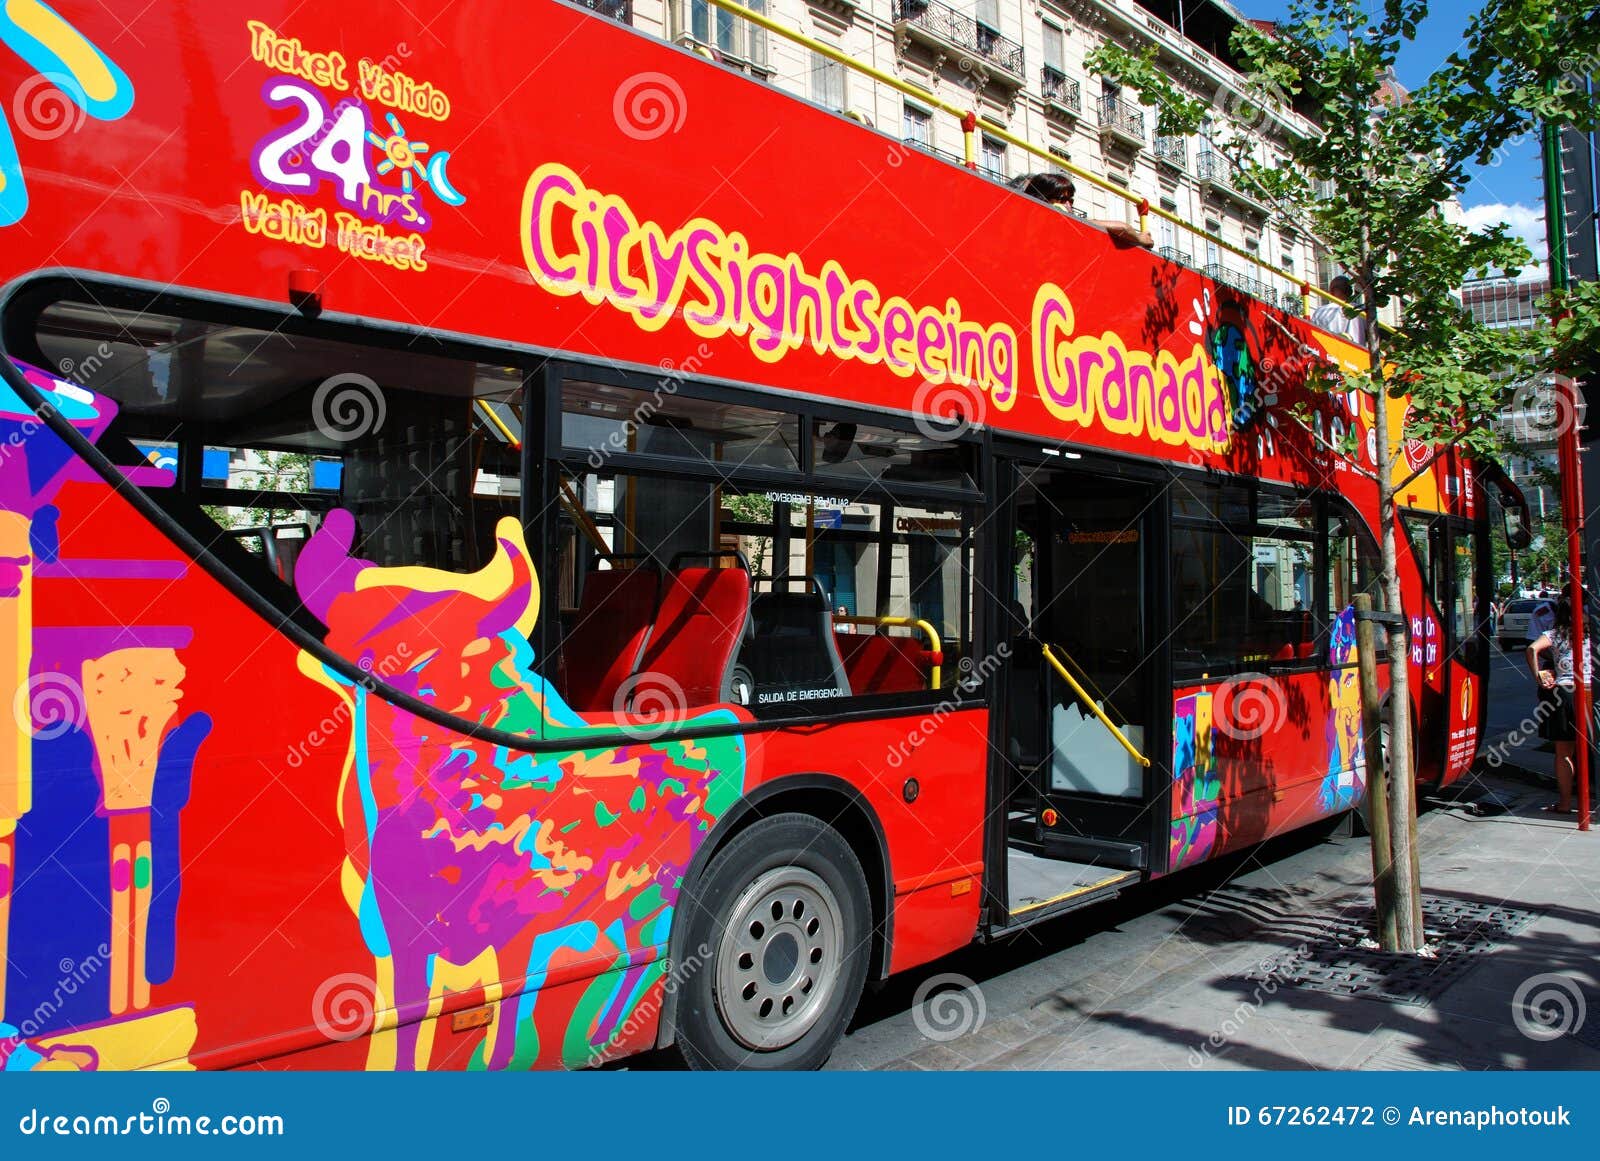 bus travel in granada